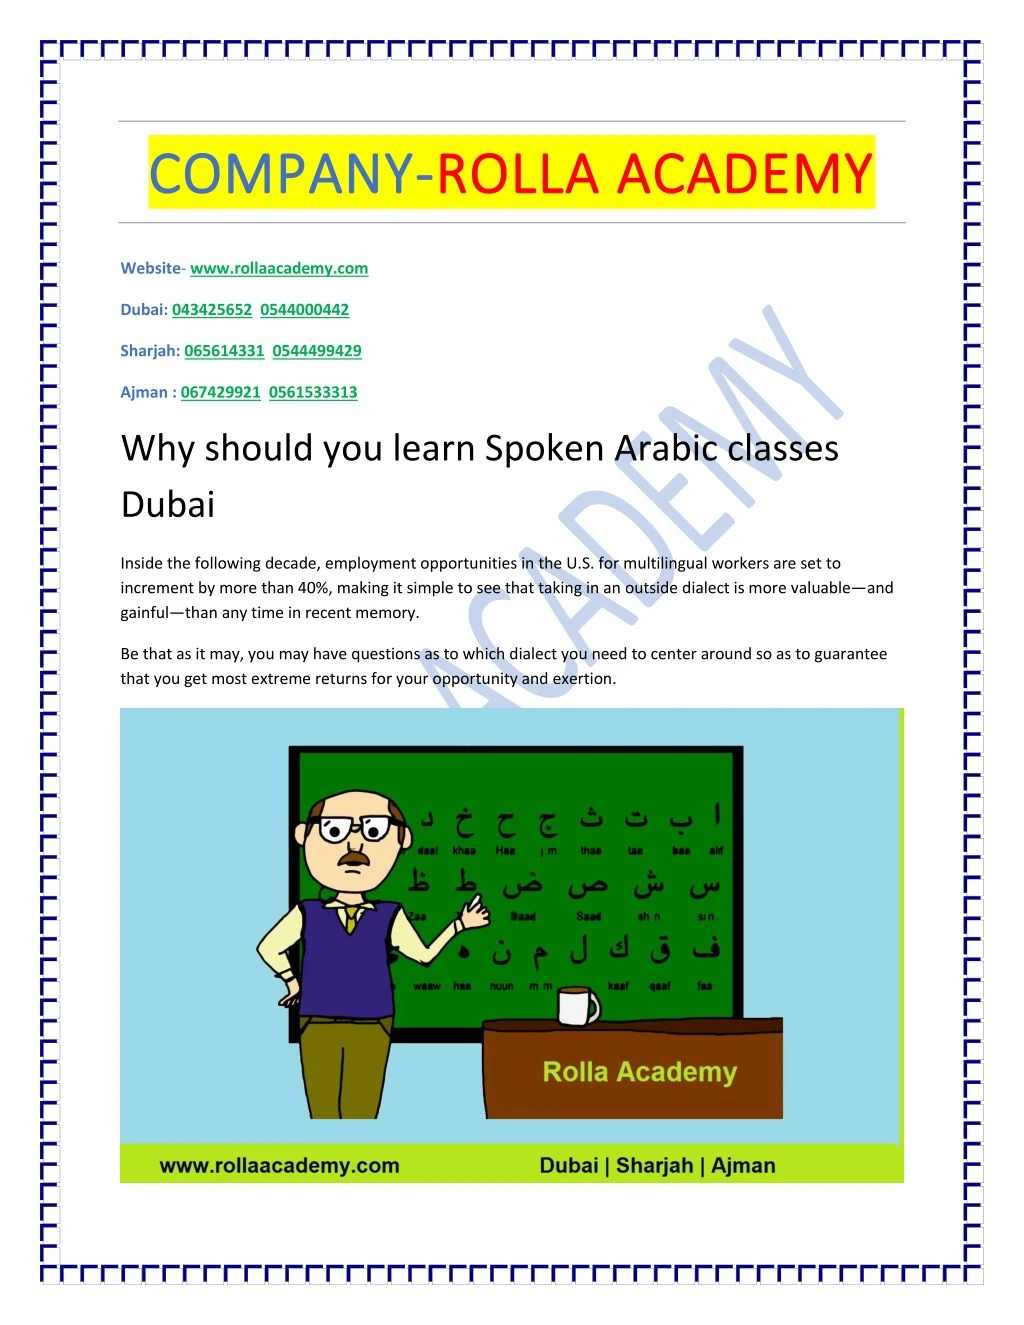 company company rolla academy rolla academy